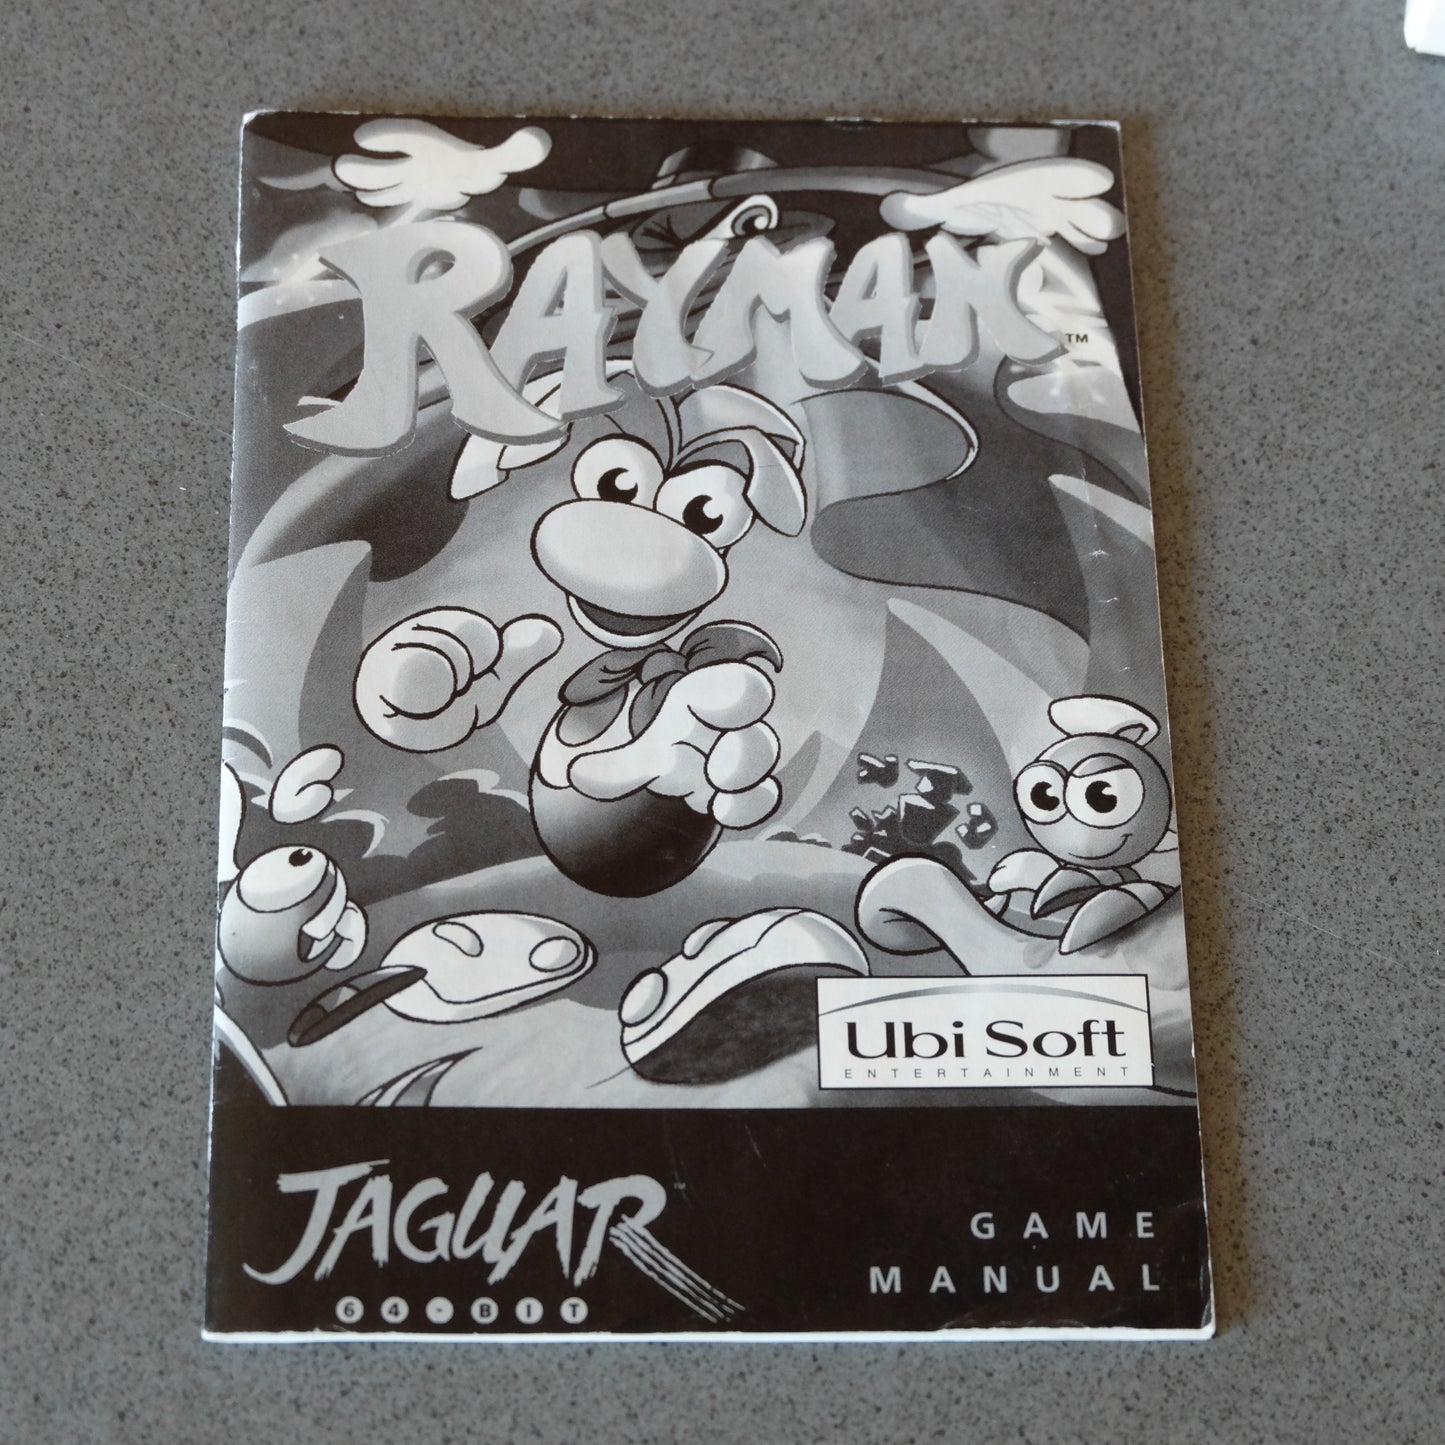 Rayman Atari Jaguar